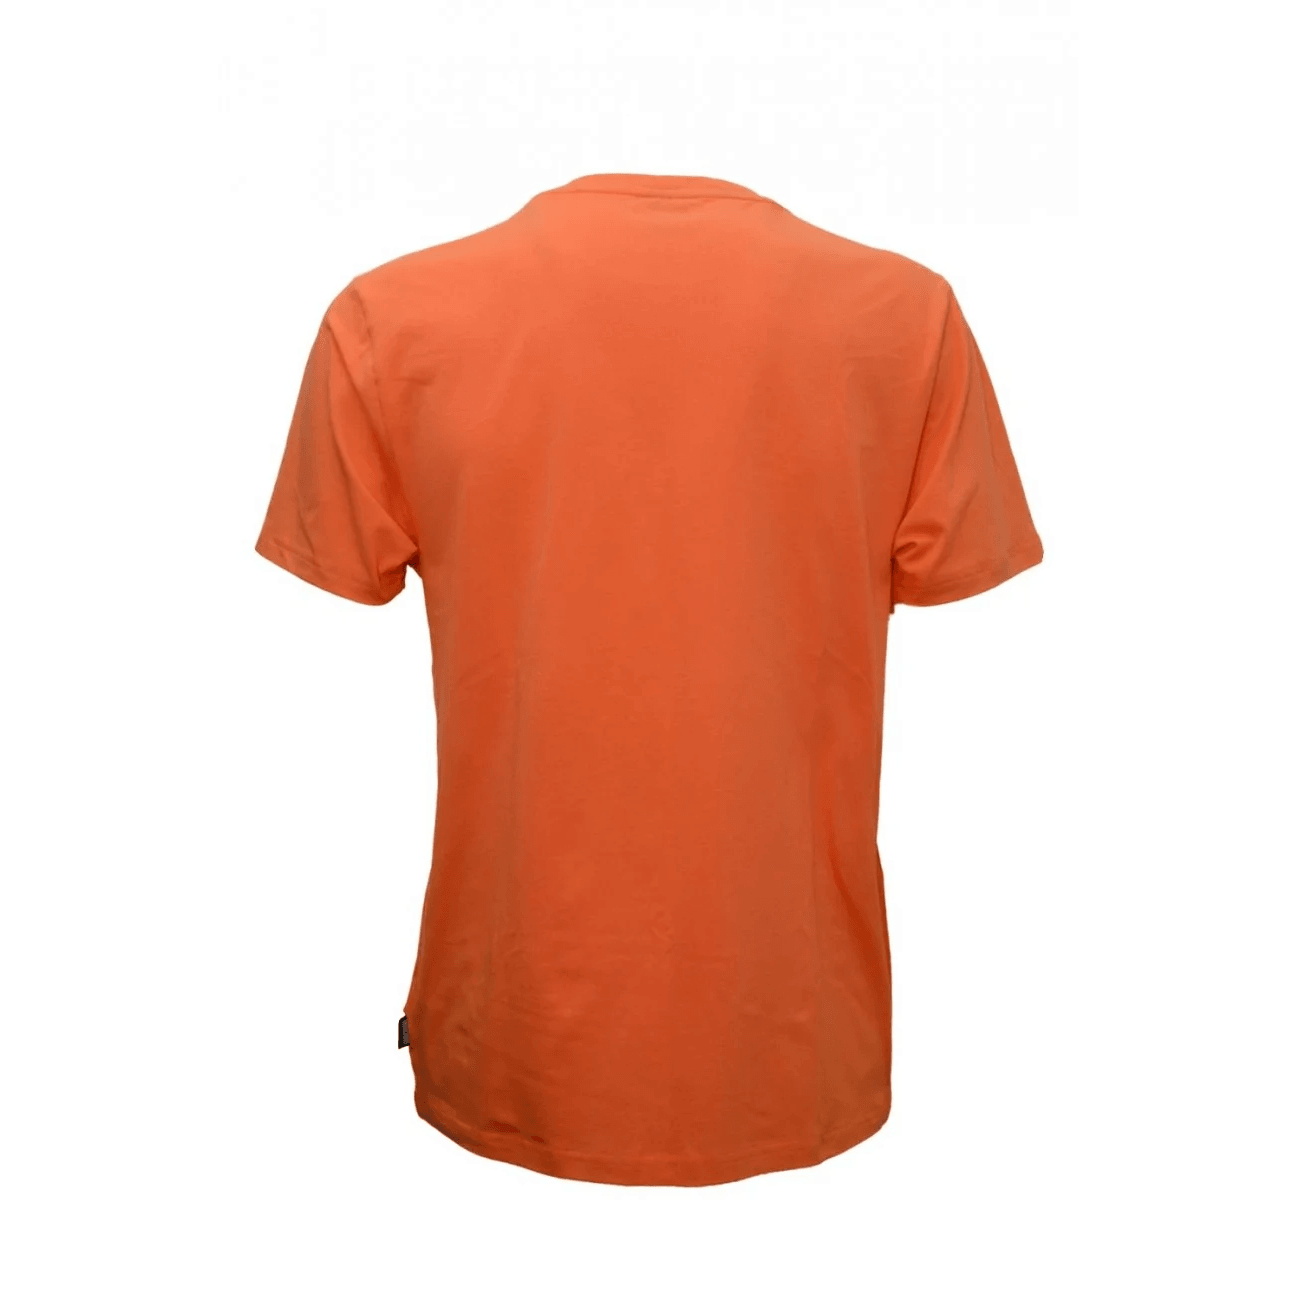 Moschino Uomo T-shirt Orsetto Arancione 7844410